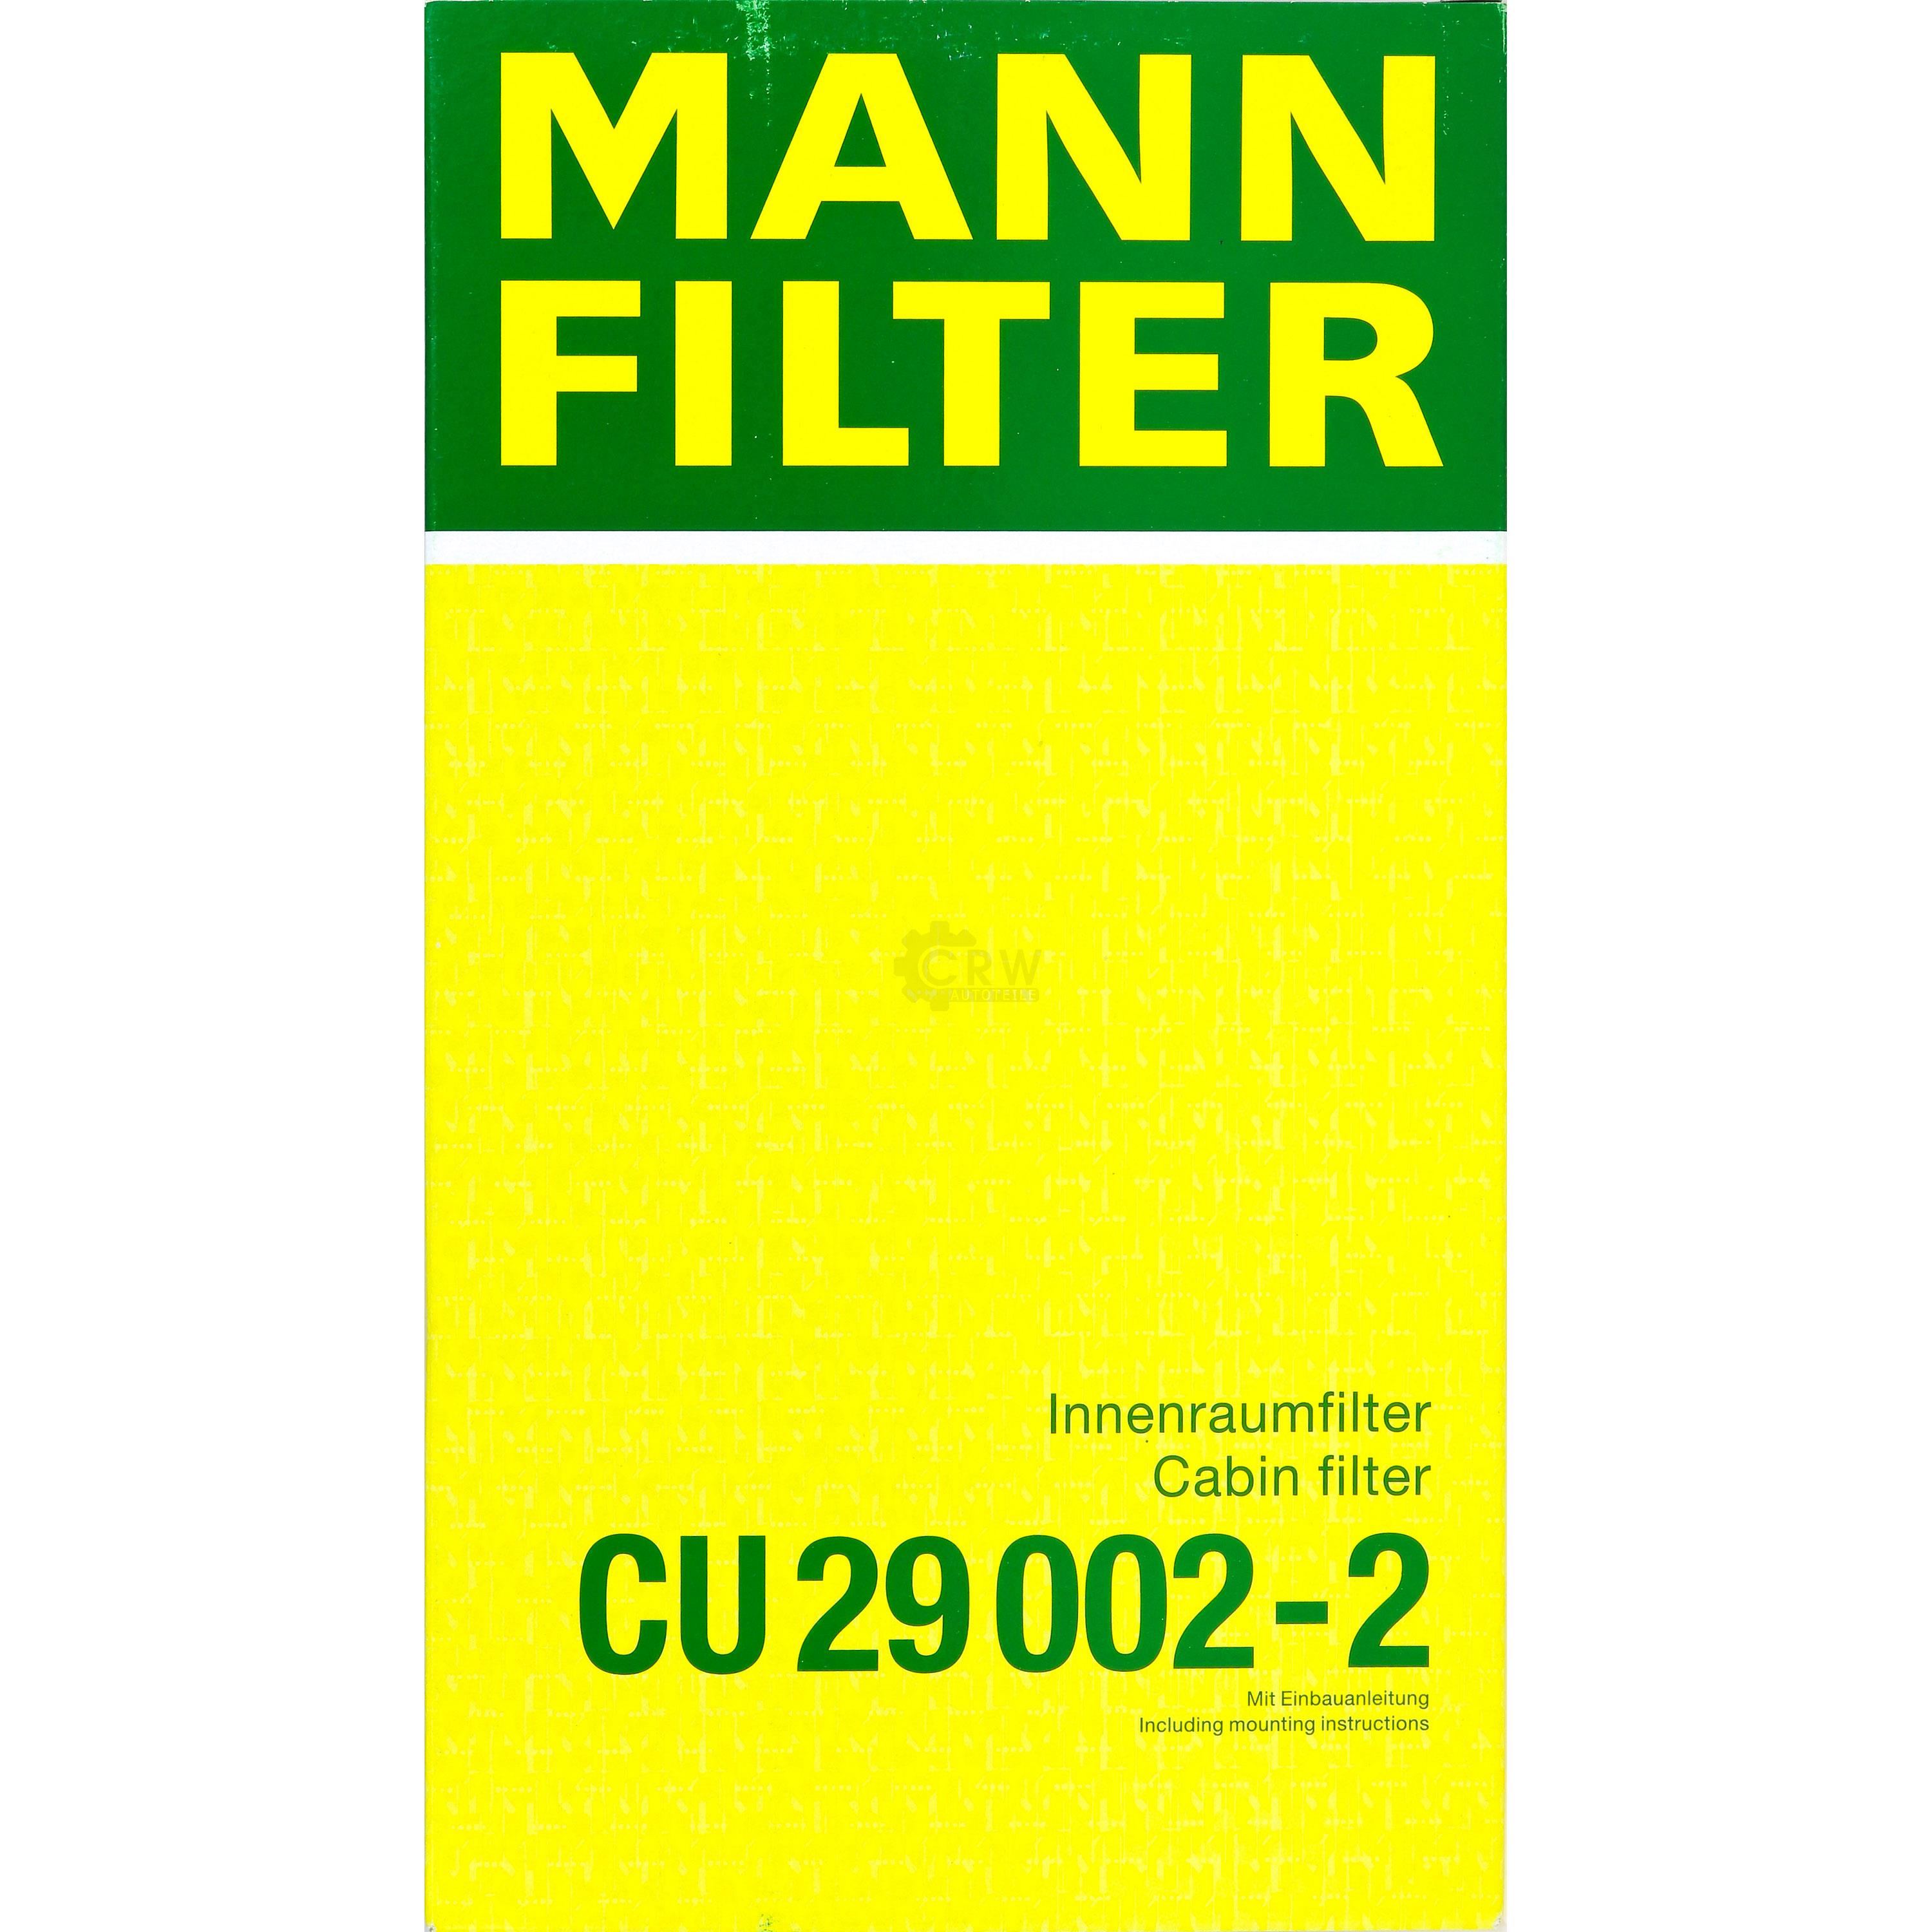 MANN-FILTER Innenraumfilter Pollenfilter CU 29 002-2